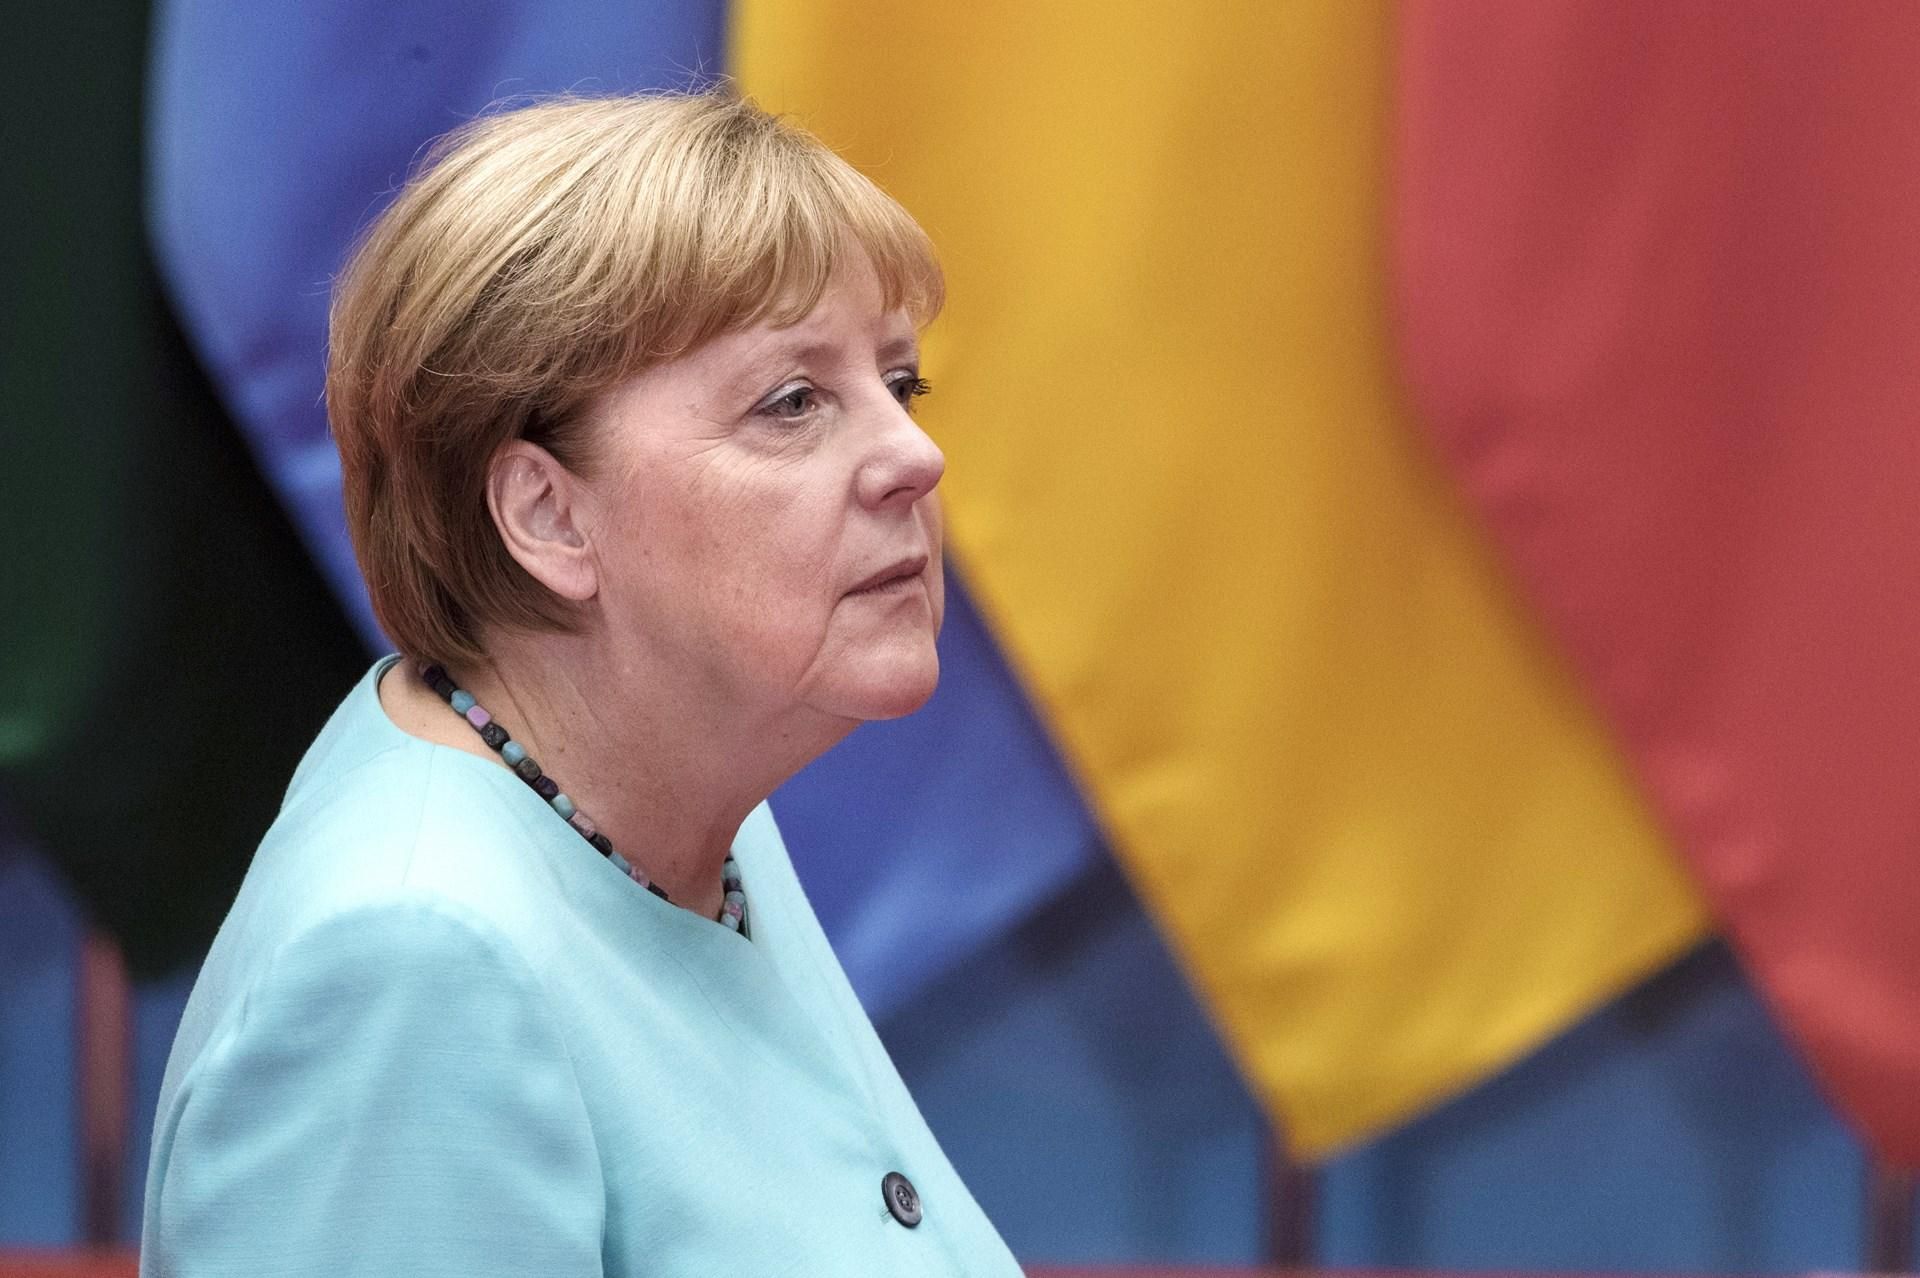 Експерти розшифрували, що шепотіла Меркель, коли тремтіла